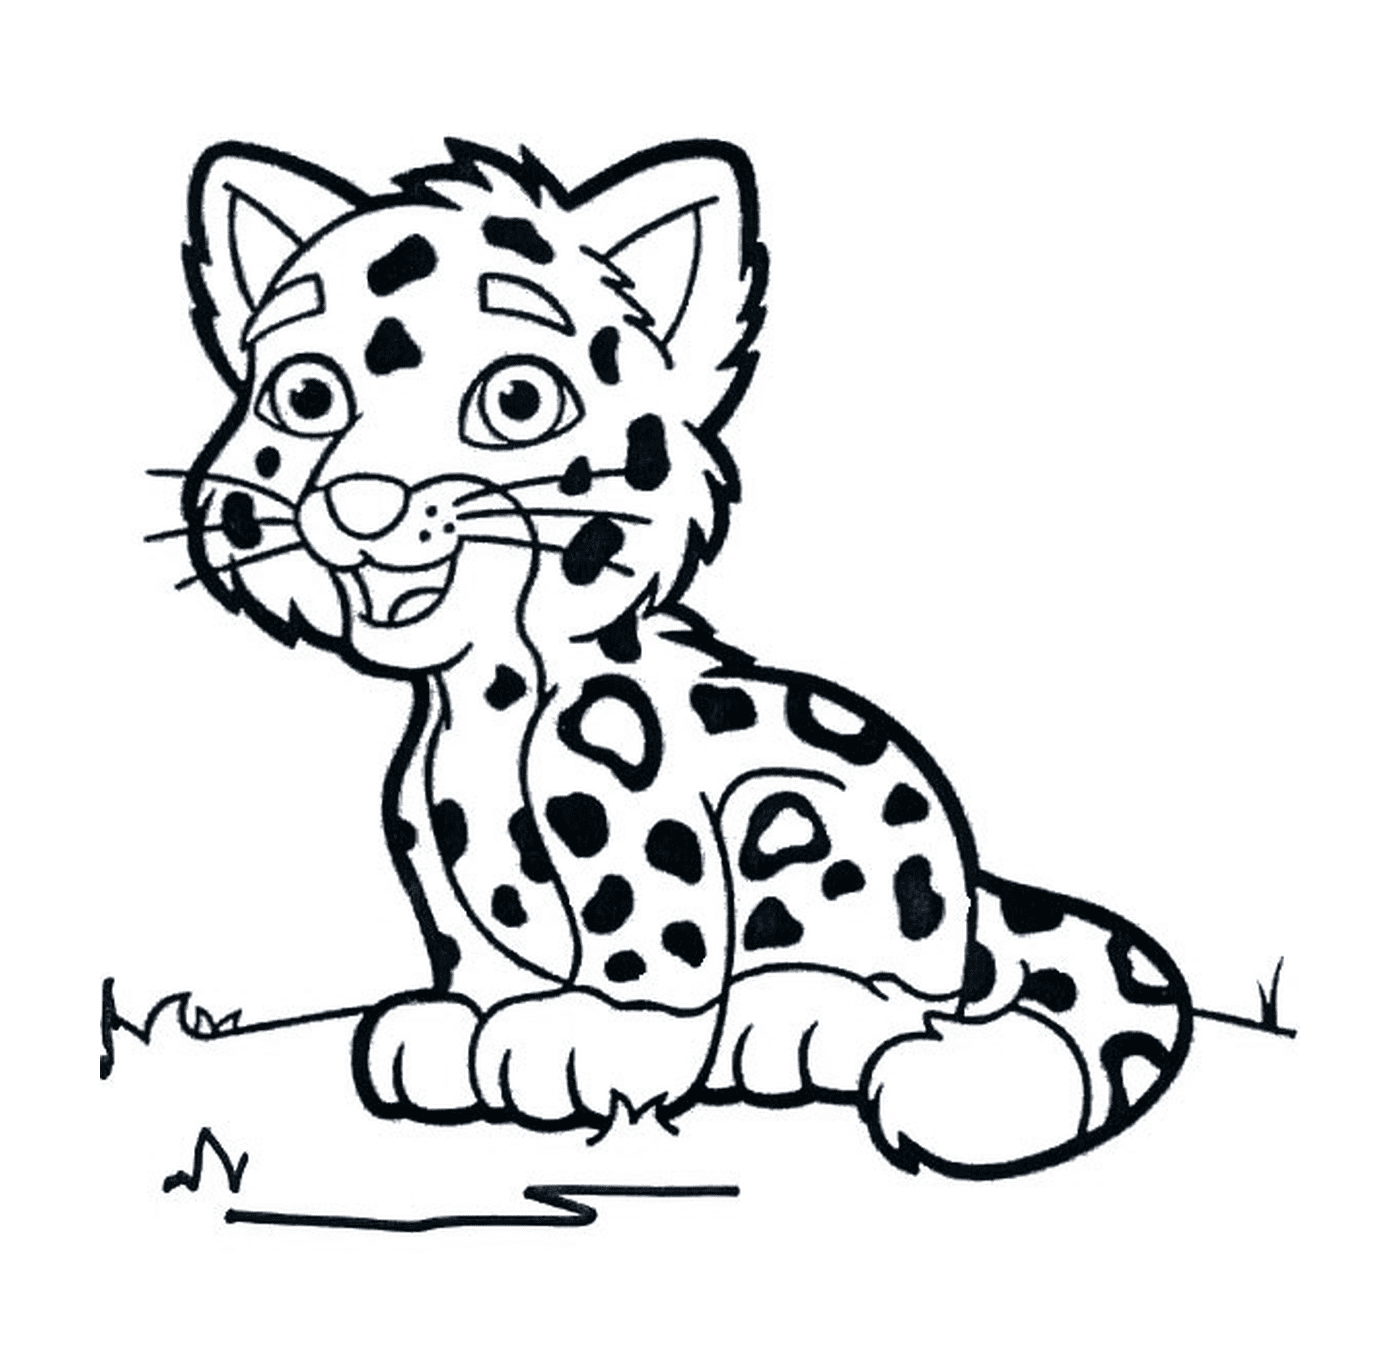  A cheetah baby 